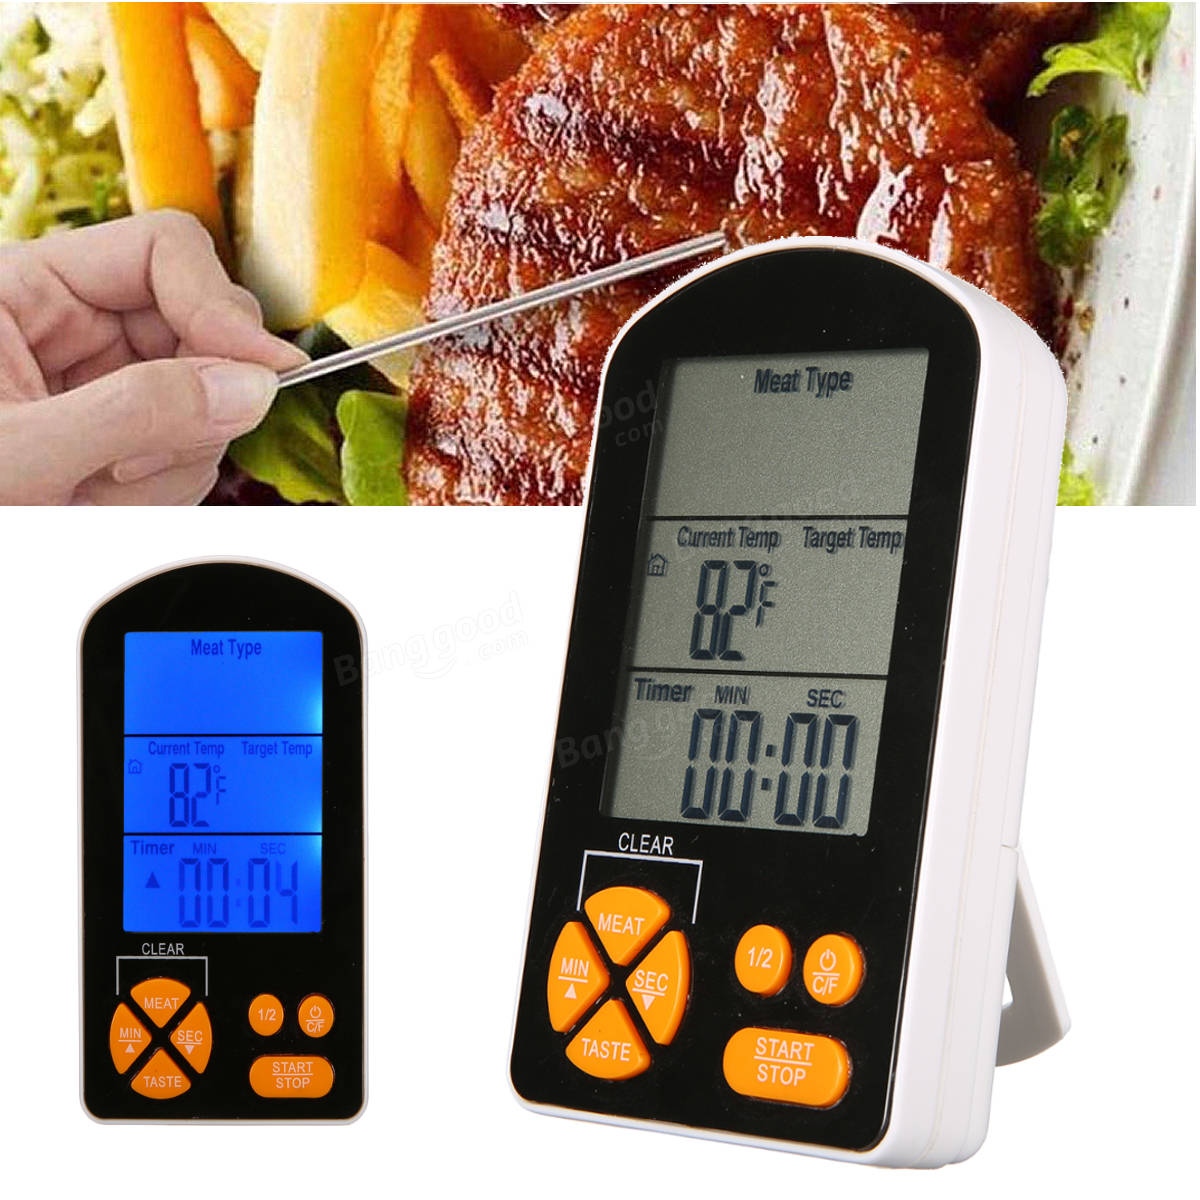 ürkçe: Dahili bir zamanlayıcı alarmı olan ve AAA pil ile çalışan açık hava BBQ pişirme dijital LCD uzaktan termometre.